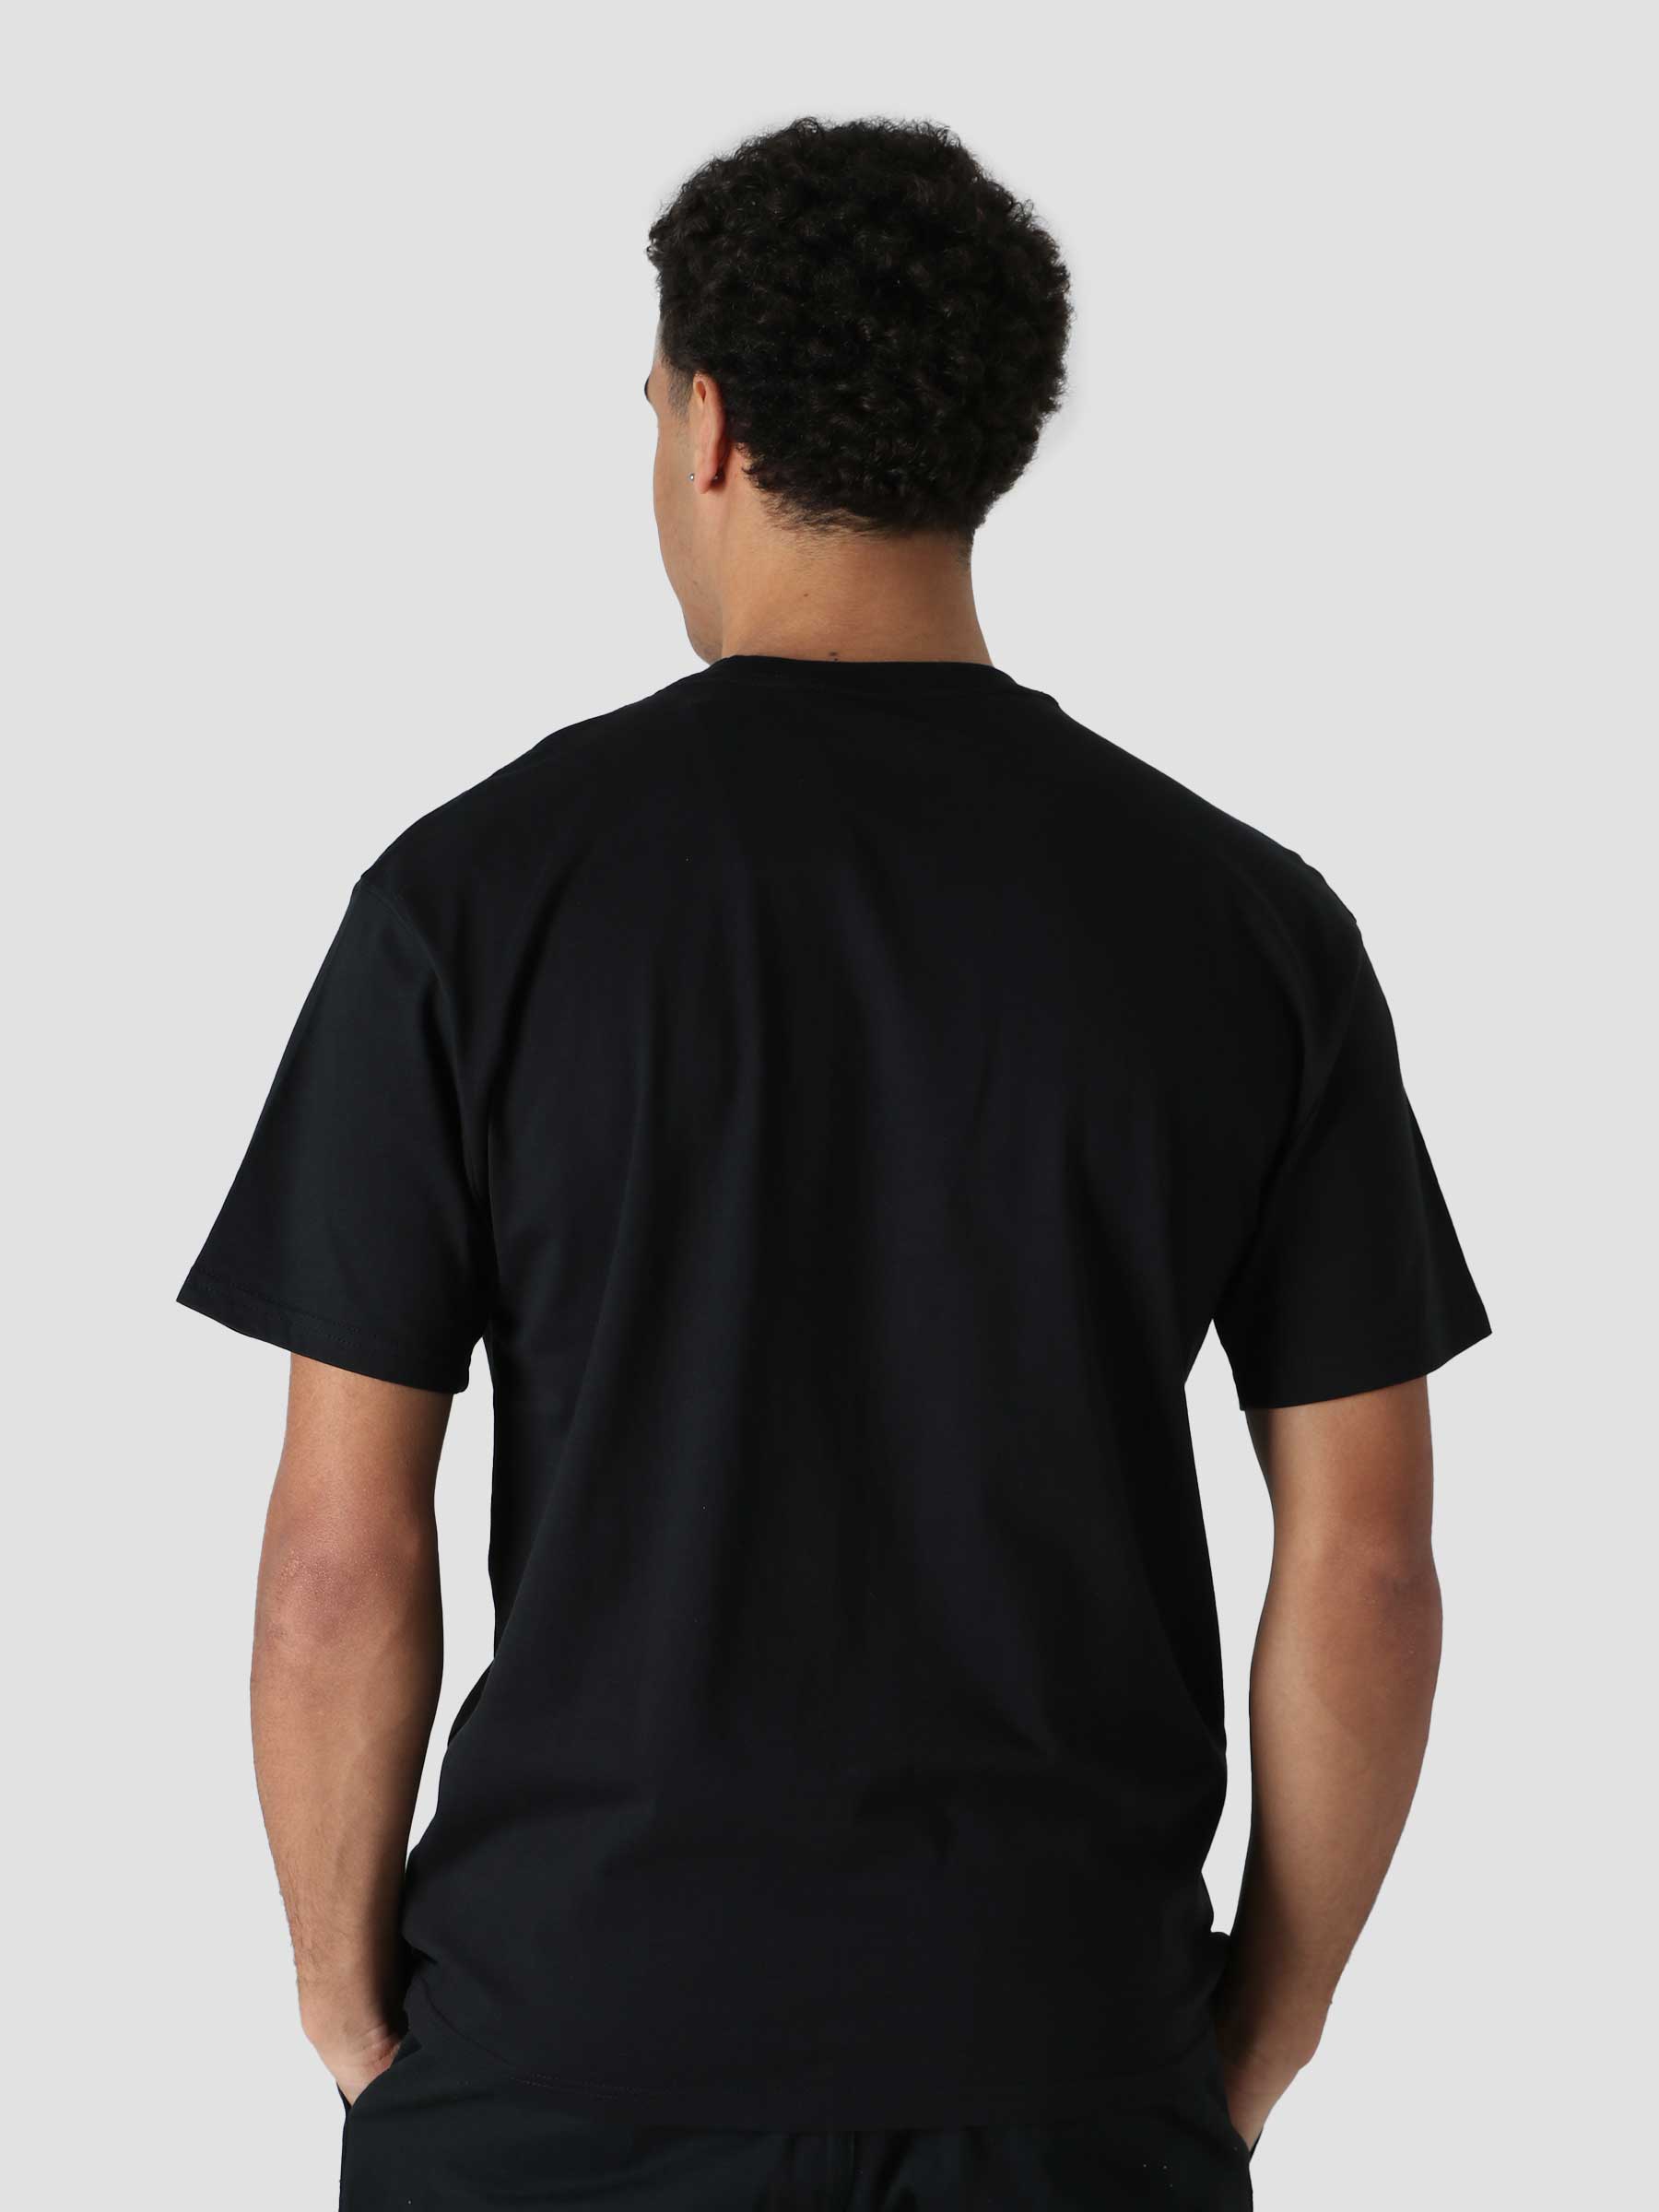 M Nk SB T-Shirt Logo Black White DC7817-010